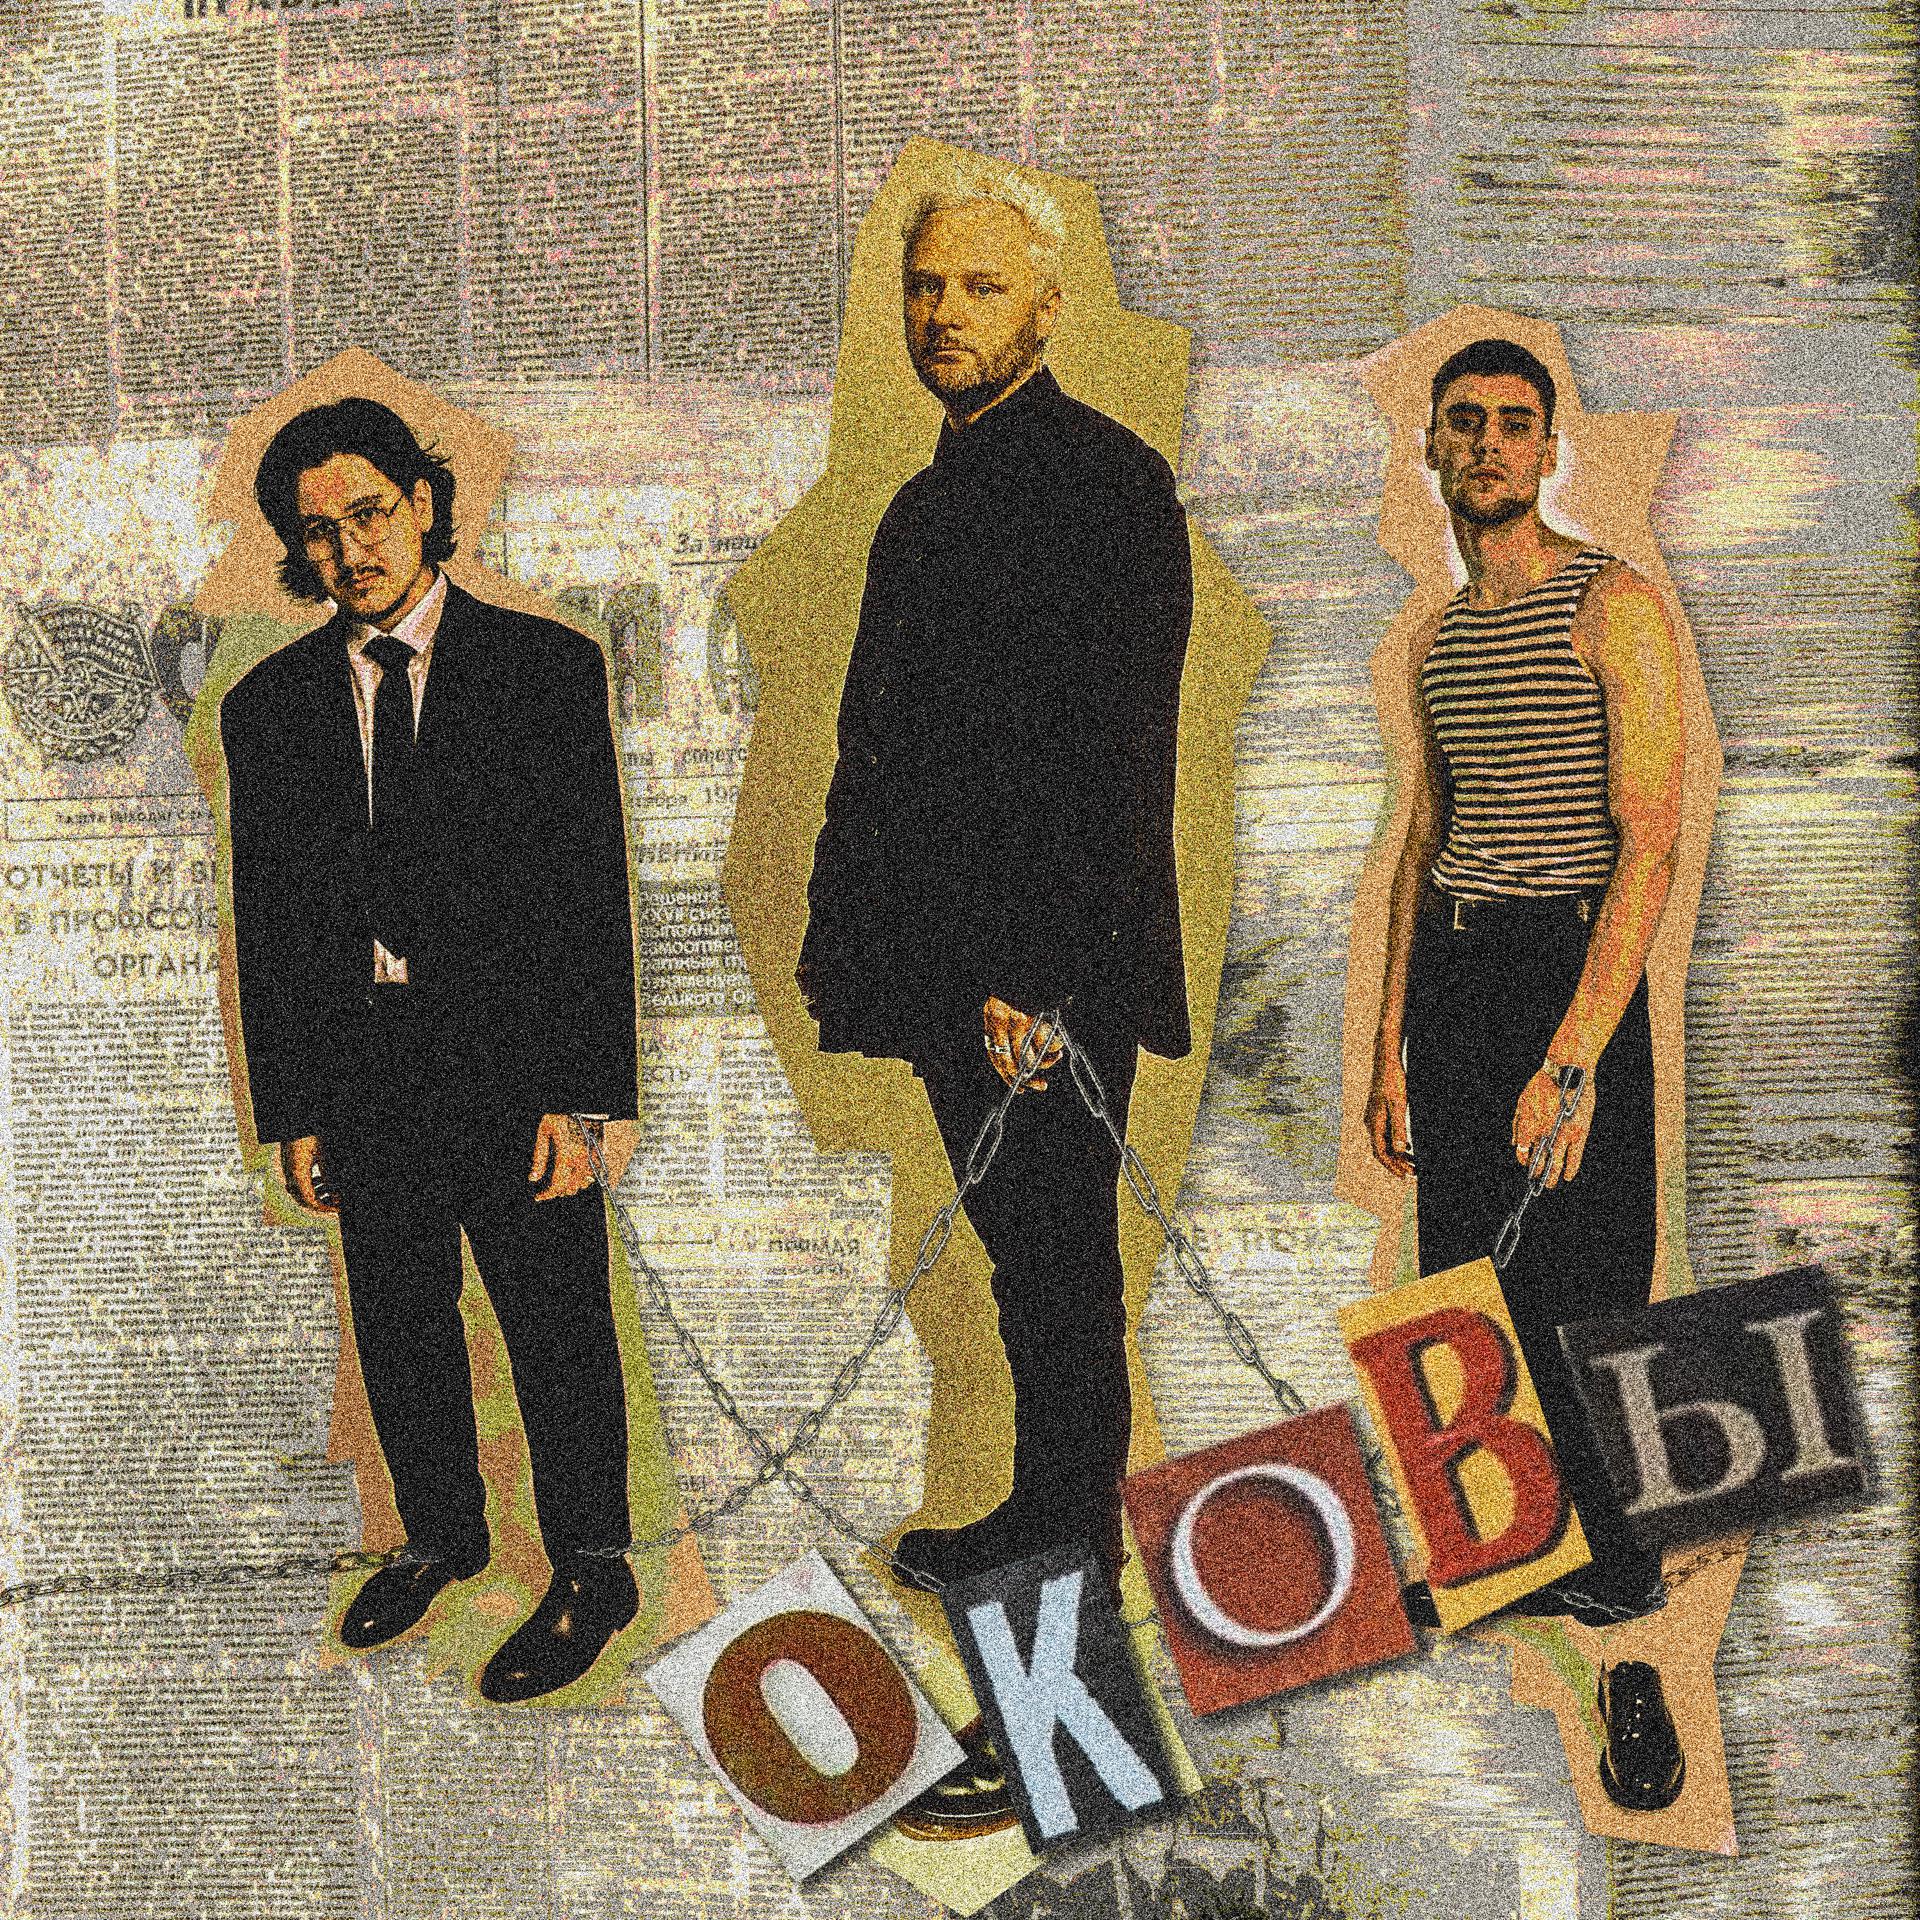 Постер альбома Оковы